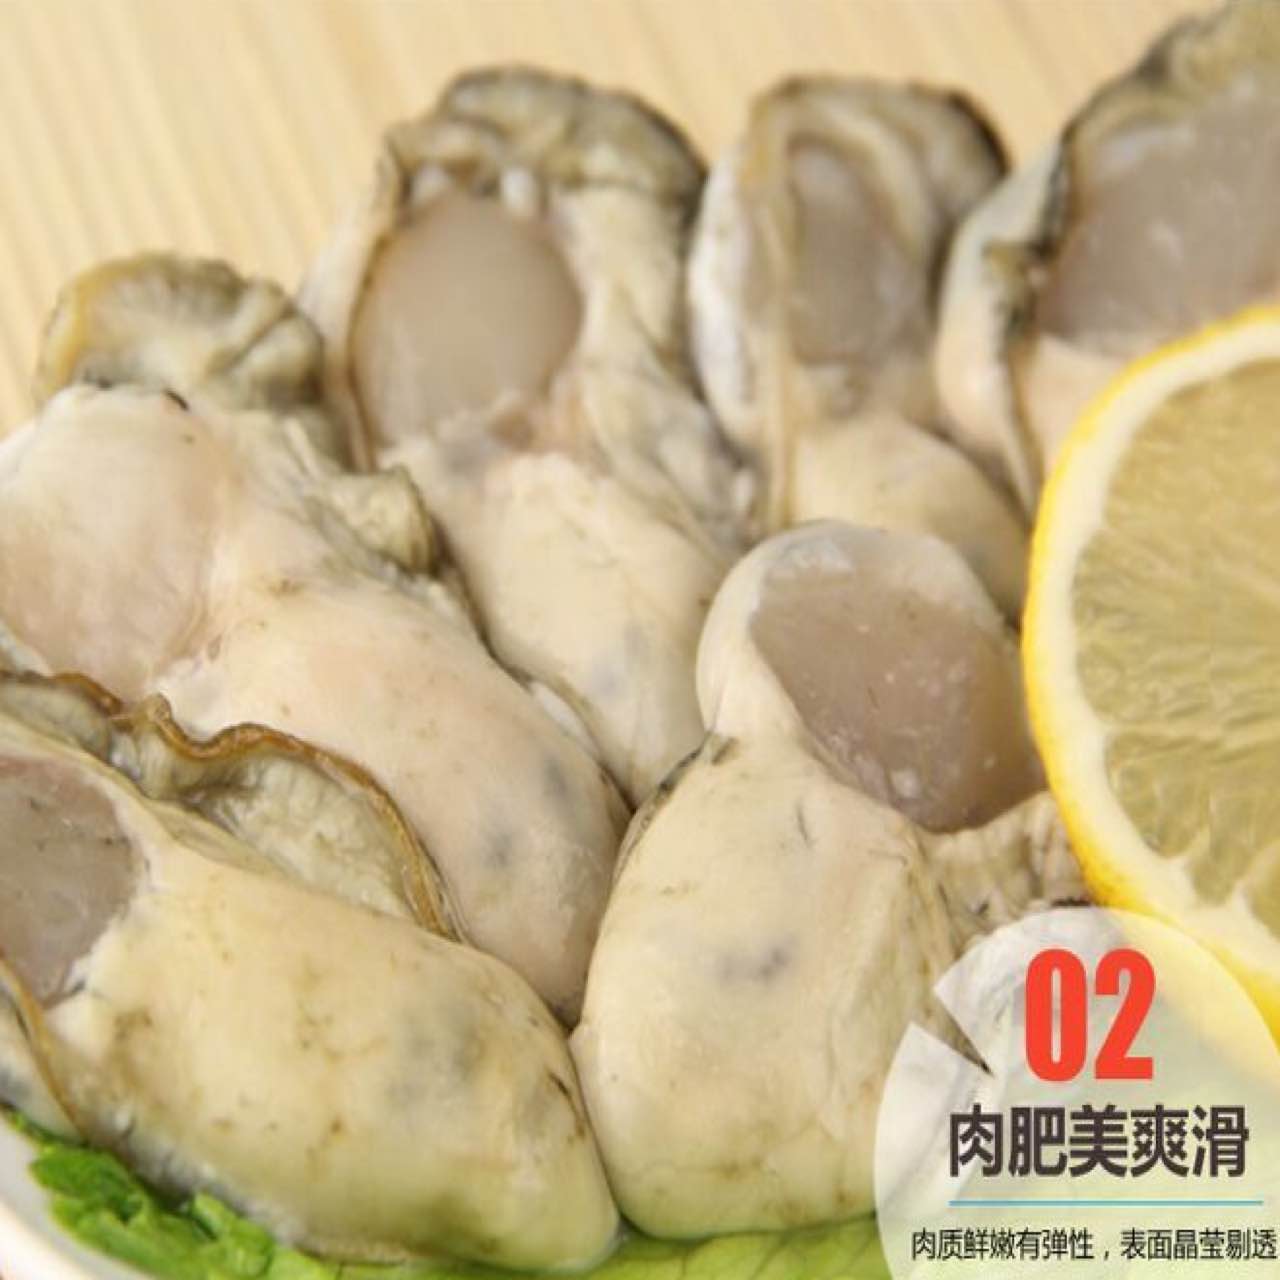 新鲜 鲜活 海鲜 现剥 海蛎肉 野生 生蚝肉 牡蛎肉 水产生鲜